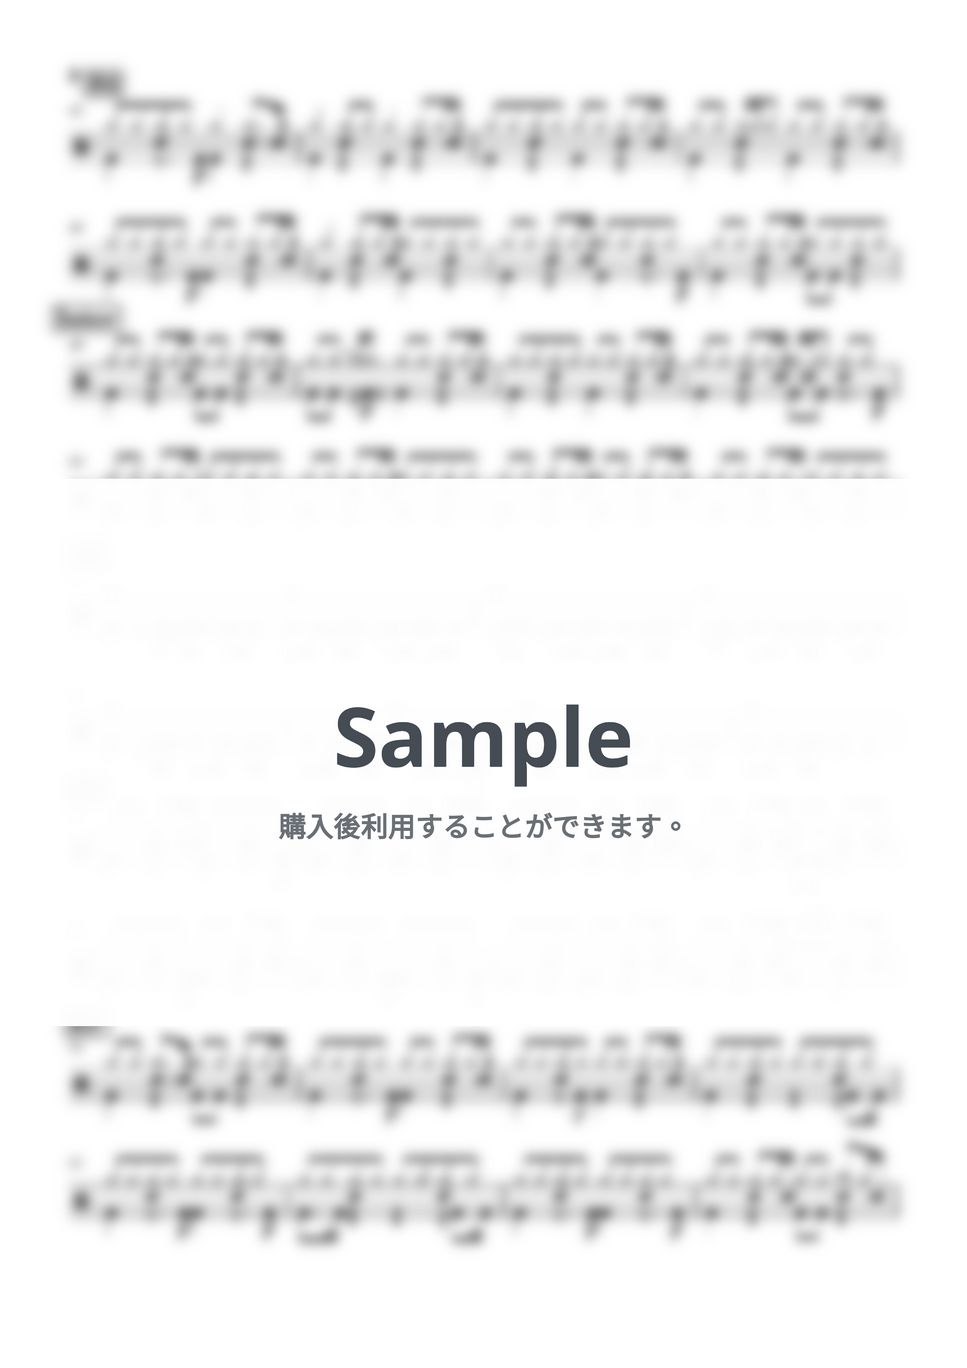 ハンバート ハンバート - あたたかな手 (ドラム譜面) by cabal